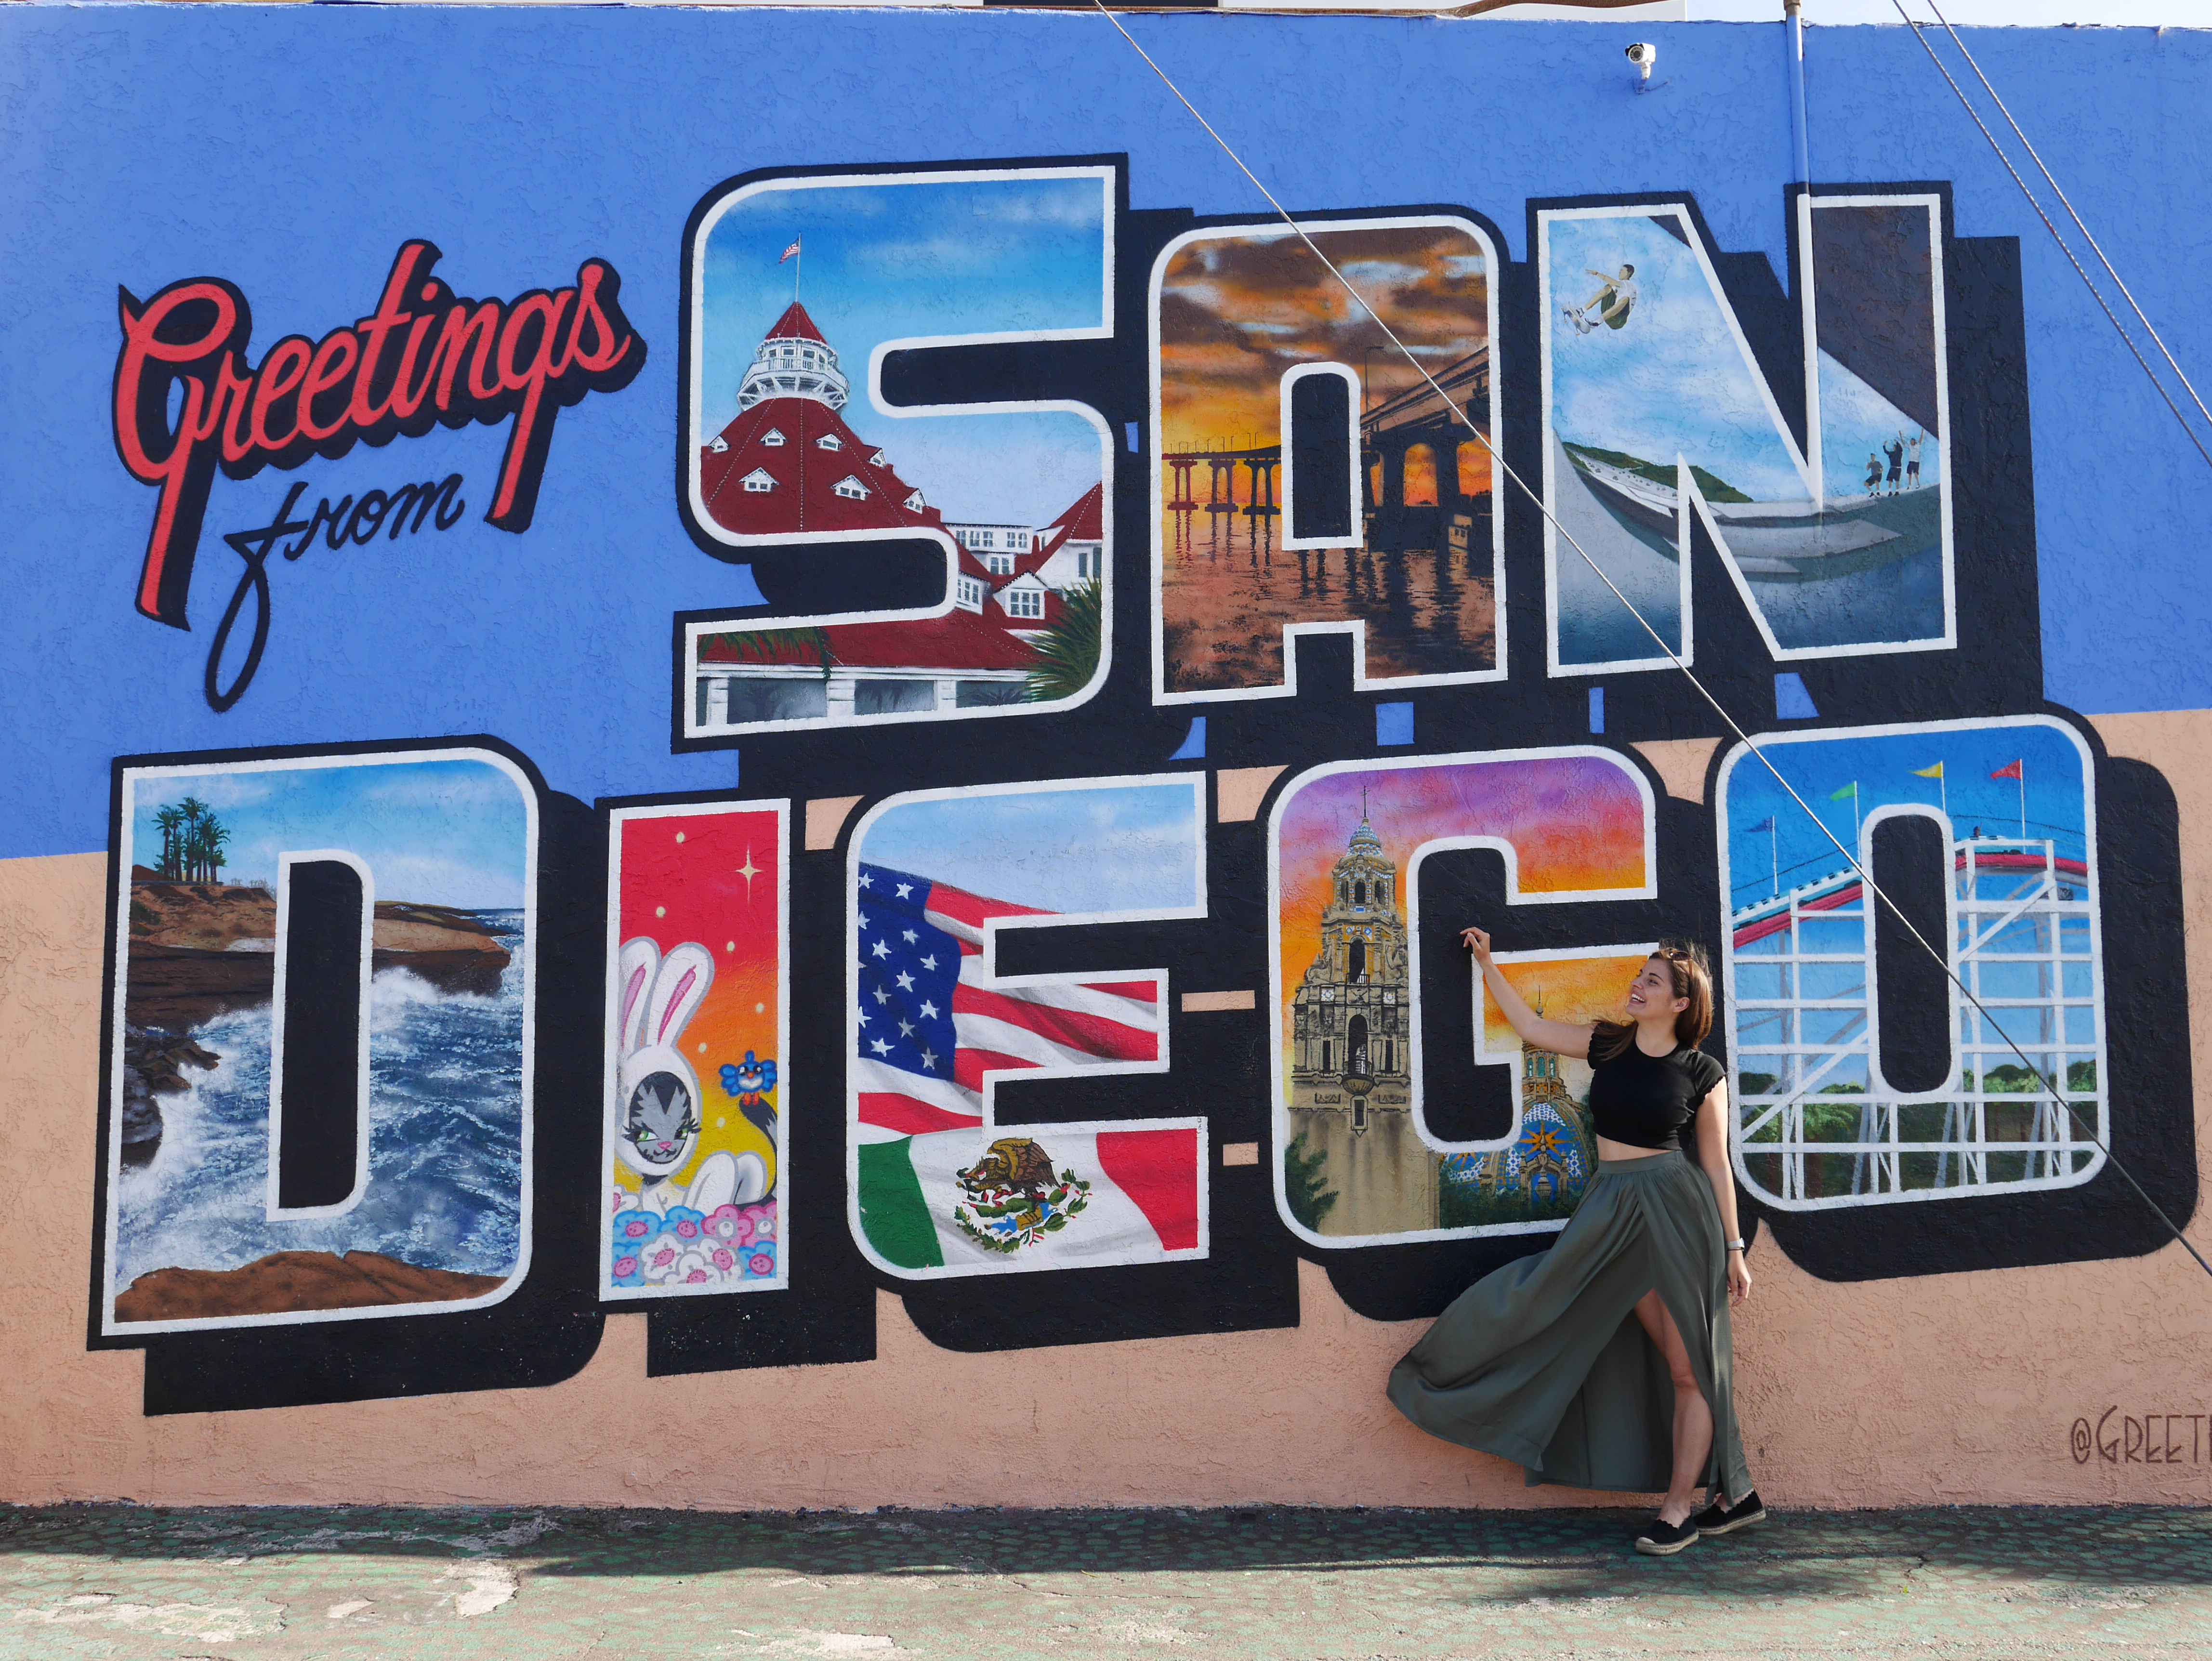 Eine junge Frau steht vor einer bunt bemalten Wand auf der "Greetings from San Diego" zu lesen ist. Sie trägt ein T-Shirt und einen langen Rock, der im Wind weht.